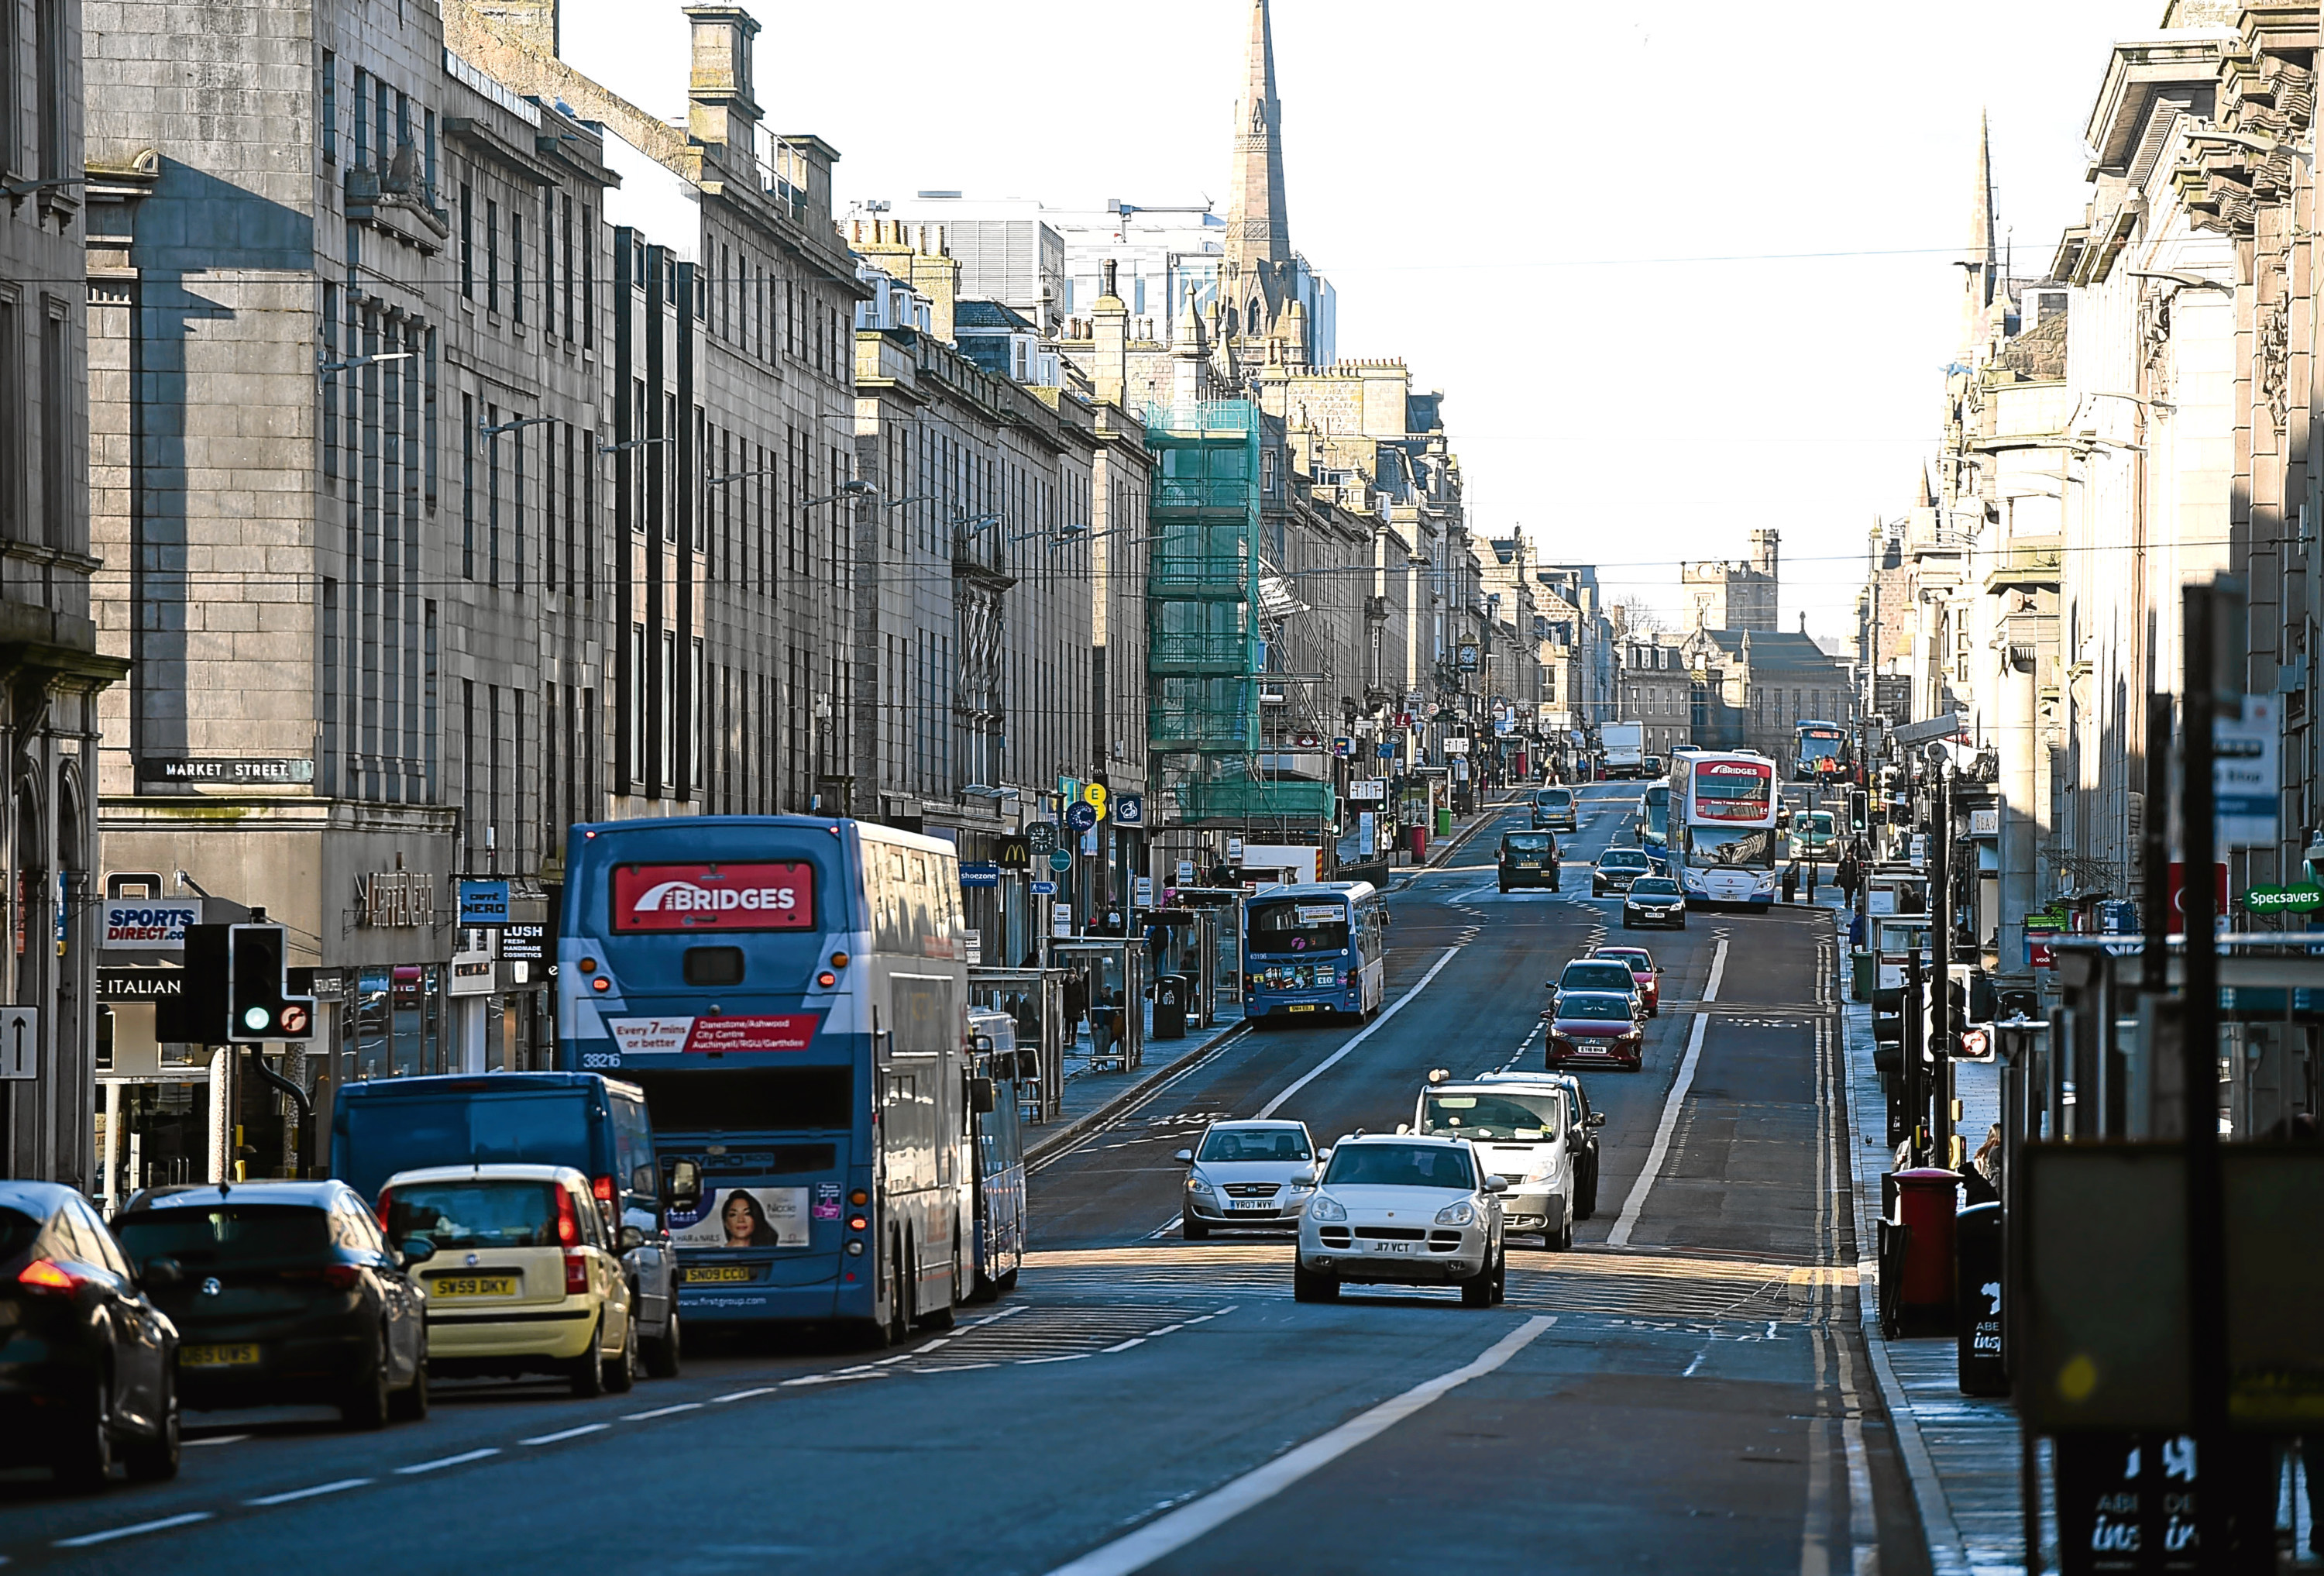 Union Street in Aberdeen.